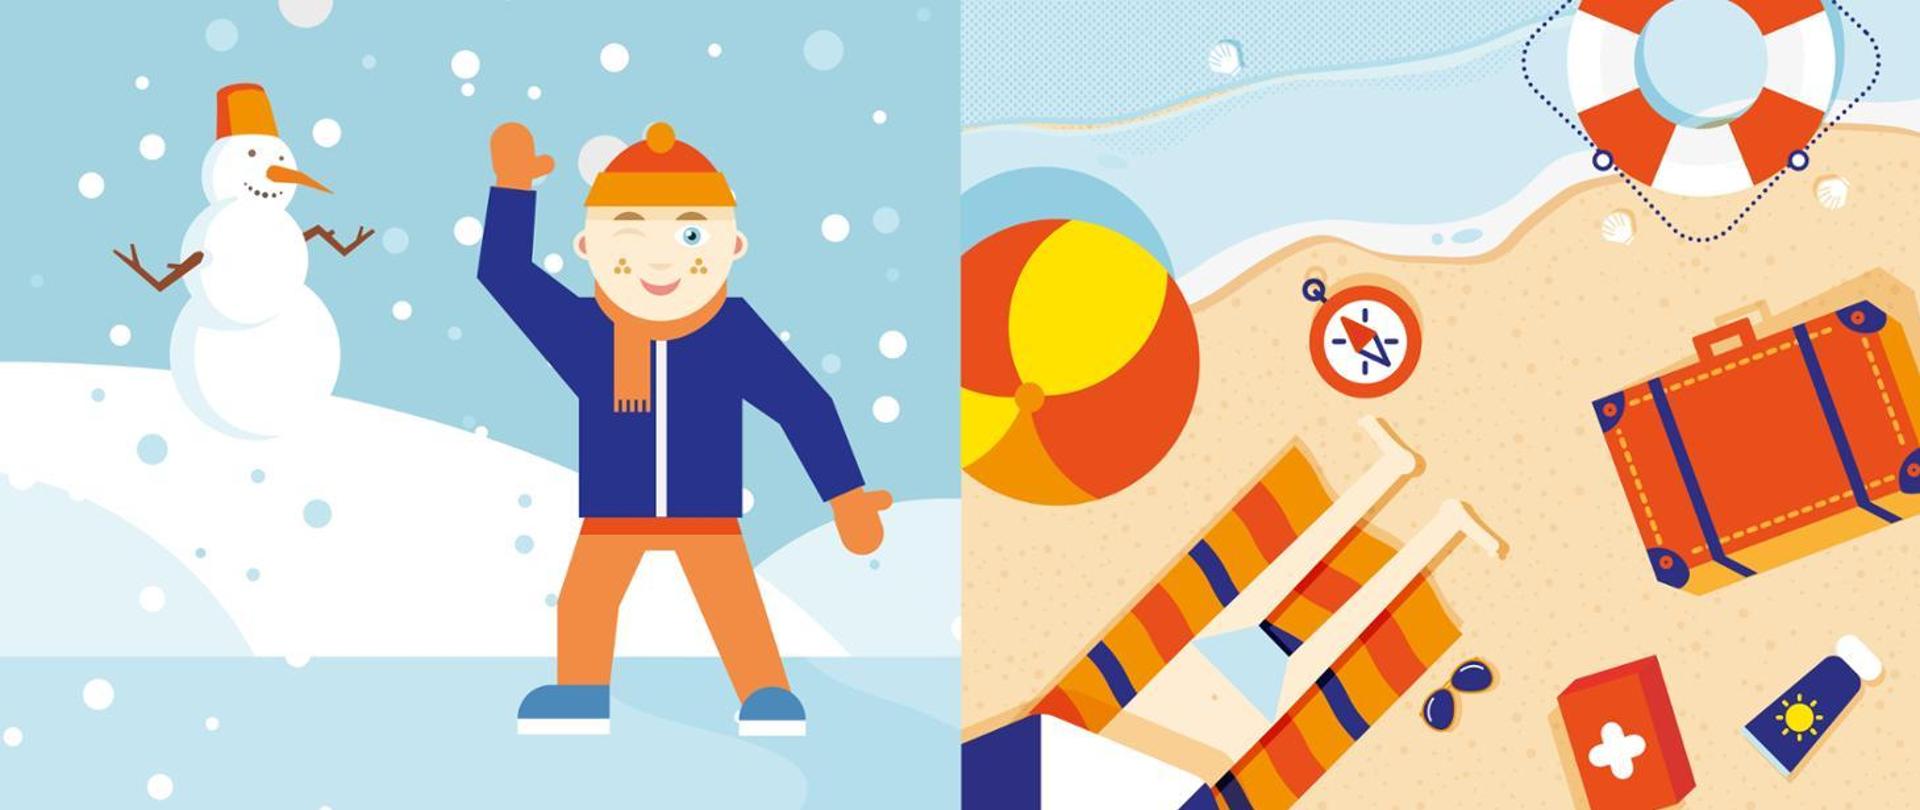 po lewej stronie obrazek symbolizujący ferie (bałwan, śnieg i chłopiec w czapce) po prawej wakacie (plaża, piłka, koło ratunkowe, walizka)